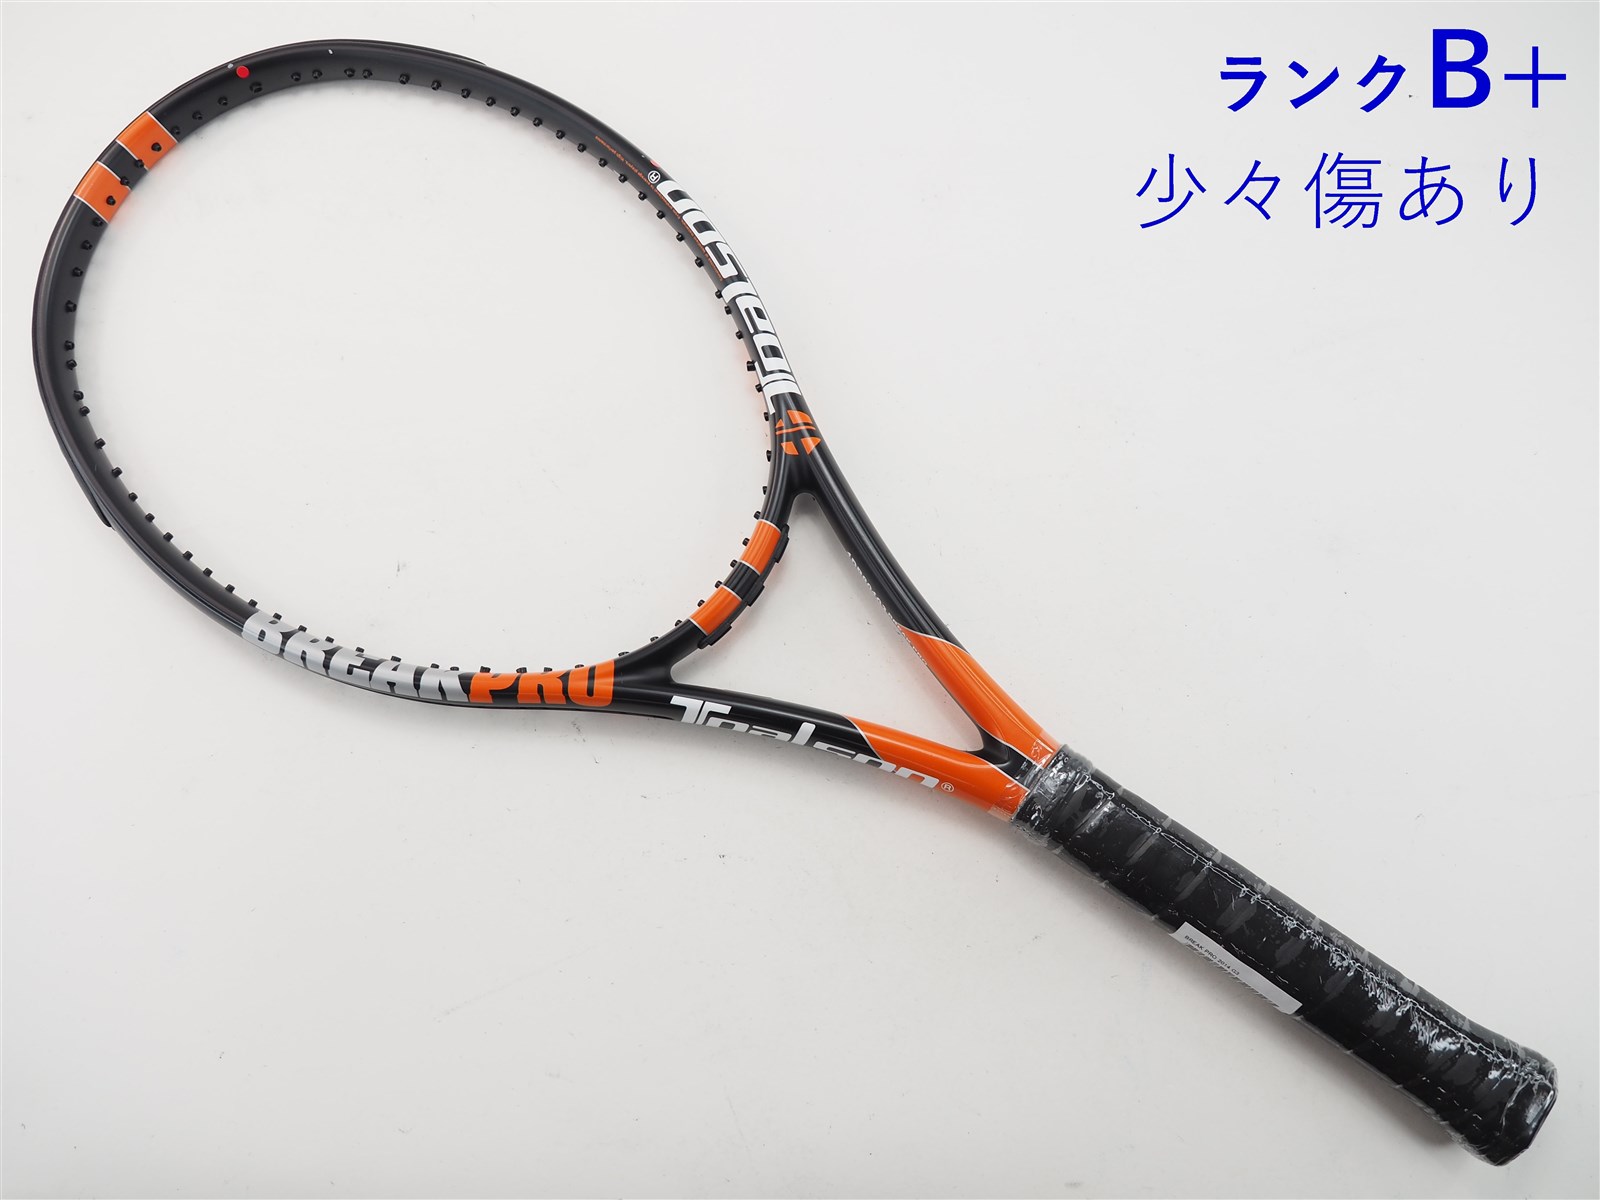 テニスラケット トアルソン ブレイク プロ 2014年モデル (G3)TOALSON BREAK PRO 2014